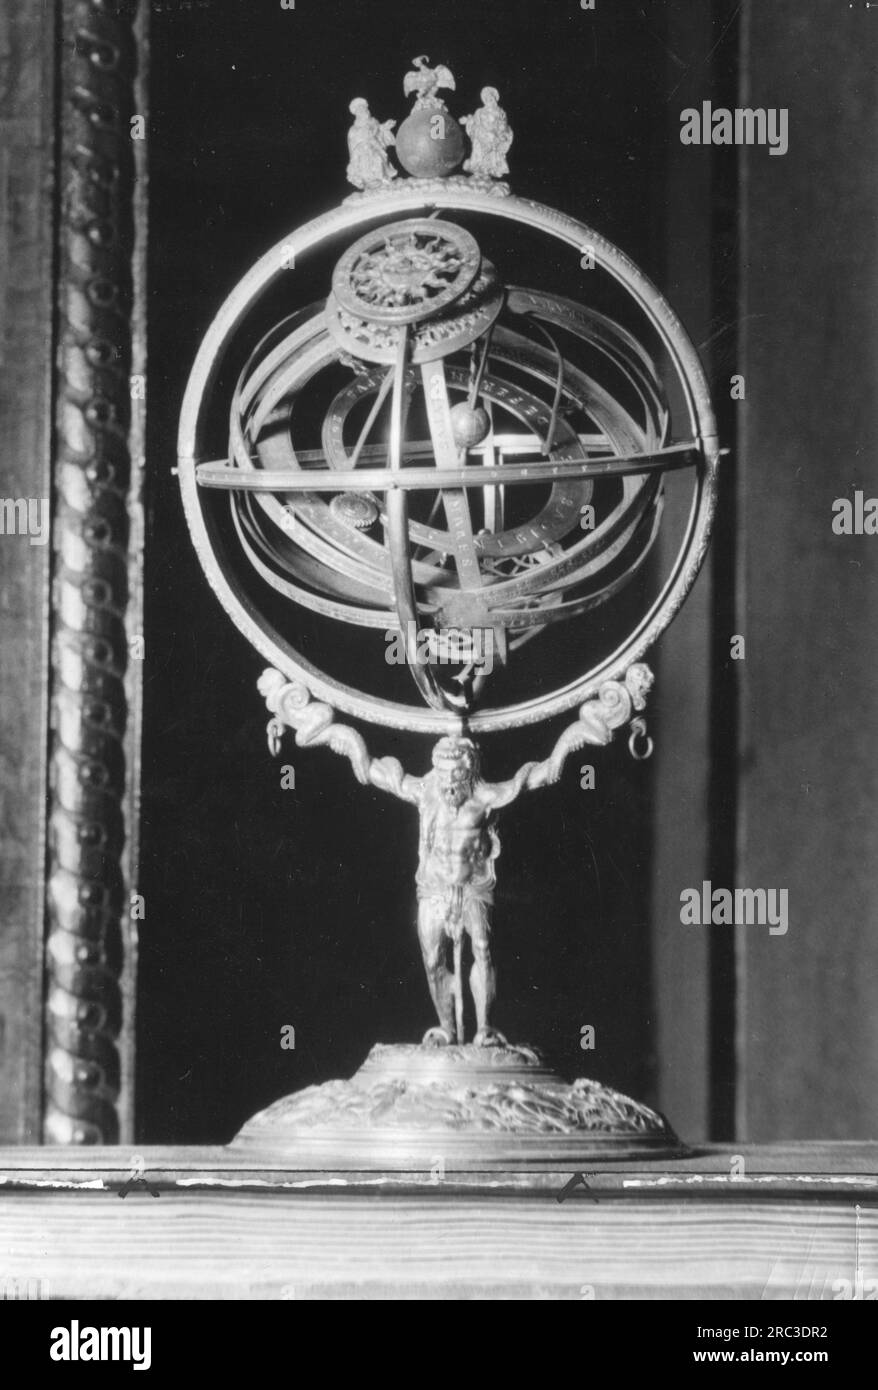 astronomie, Messinstrument, Armillarsphäre, Bronze, vergoldet, CA. 1569, ZUSÄTZLICHE-RECHTE-FREIGABE-INFO-NICHT-VERFÜGBAR Stockfoto